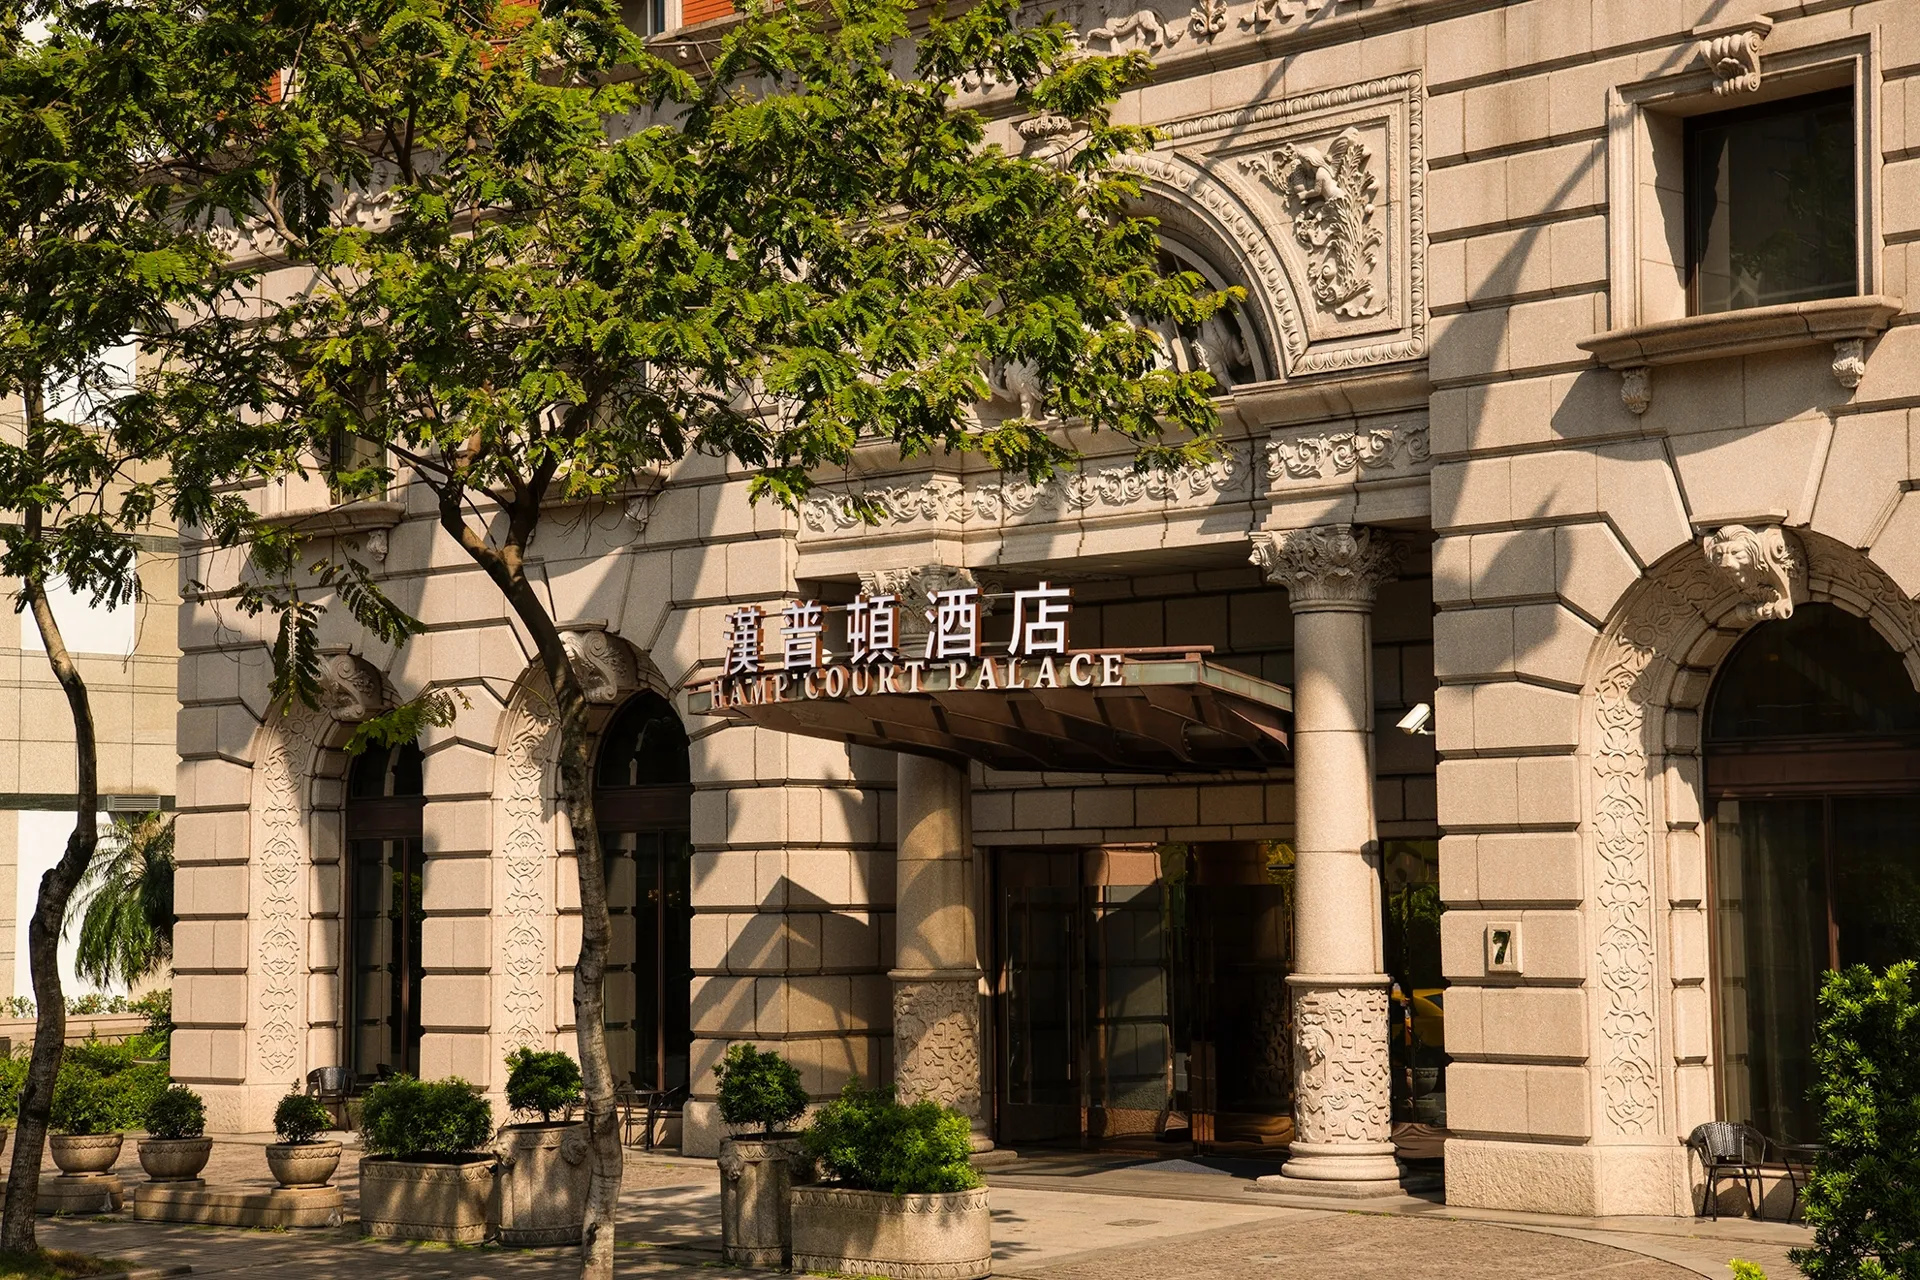 台北漢普頓酒店,HAMP COURT PALACE TAIPEI